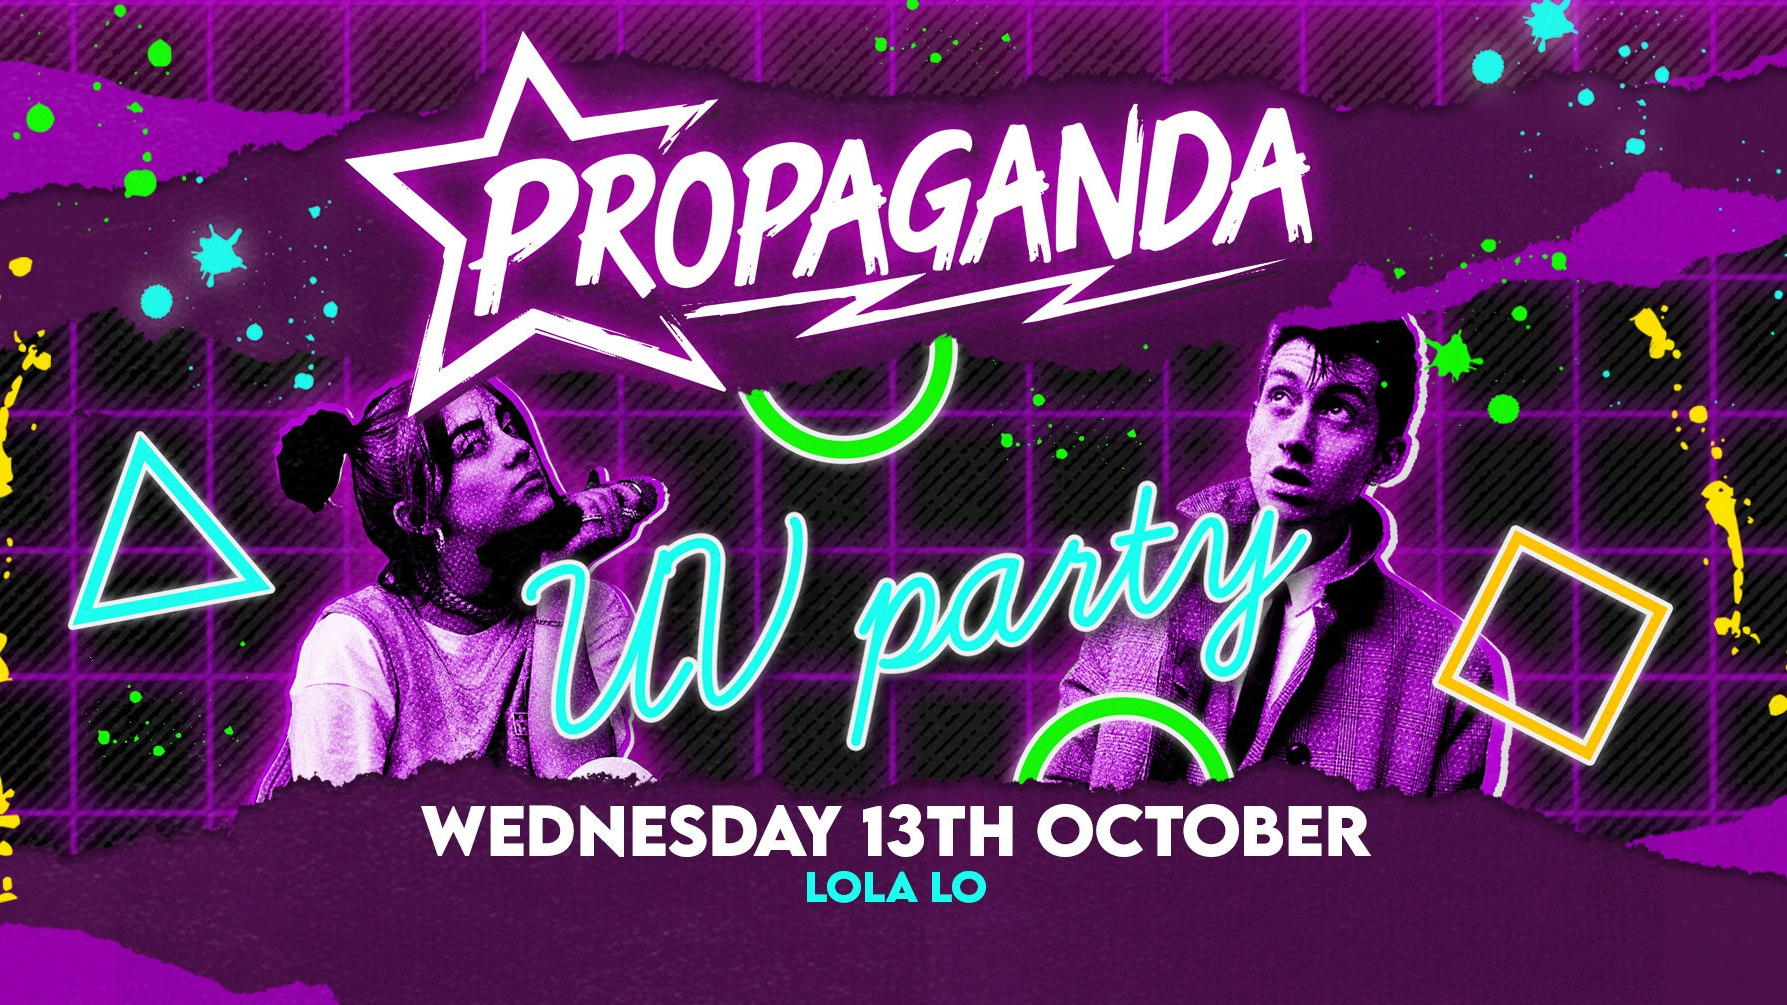 Propaganda Cambridge – UV Party at Lola Lo!